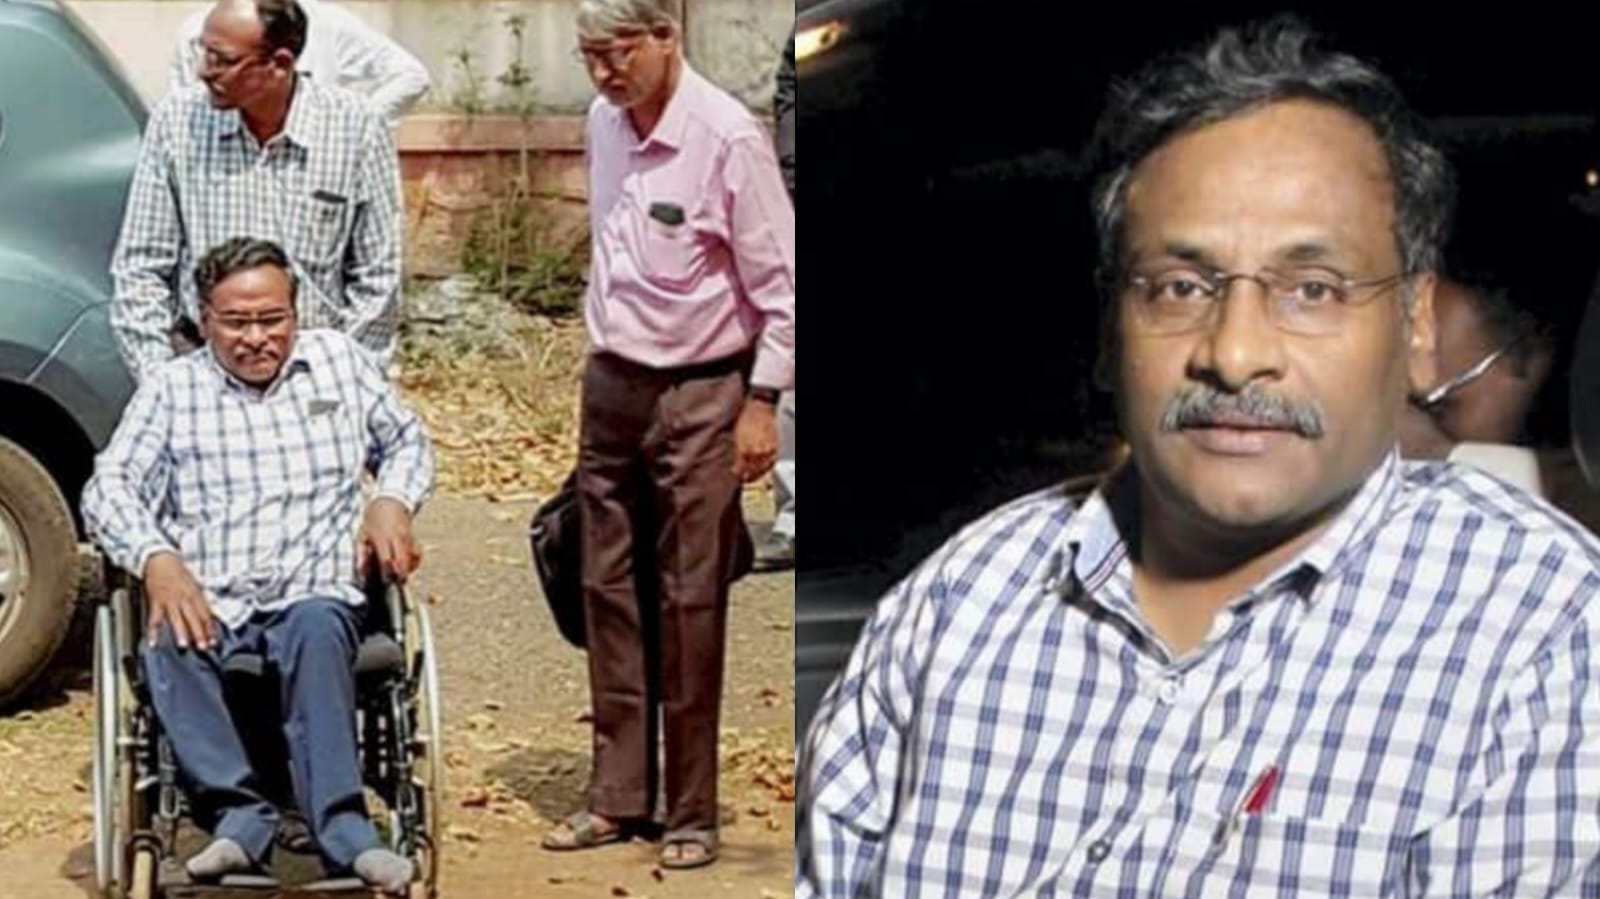 ماؤسٹ لنک کیس: بمبئی ہائی کورٹ نے دہلی یونیورسٹی کے سابق پروفیسر سائی بابا کو بری کر دیا